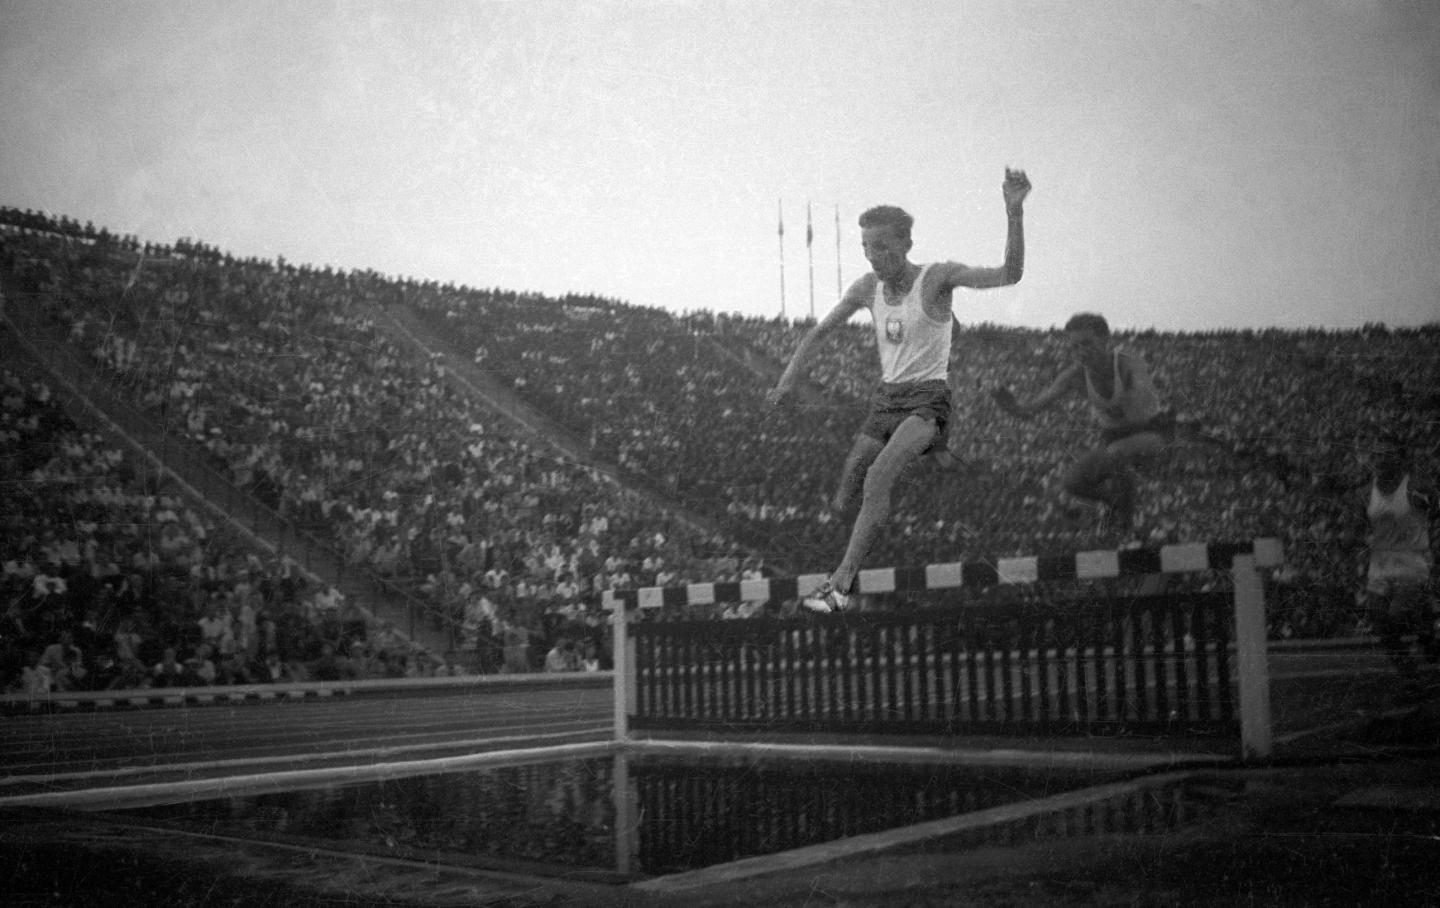 Pierwsze dni sierpnia 1958 roku. Na trybunach Stadionu Dziesięciolecia około stu tysięcy widzów, a na bieżni, rzutniach i skoczniach największe gwiazdy sportu z Polski i USA podczas międzypaństwowego meczu lekkoatletycznego. Na zdjęciu dwóch bohaterów legendarnego wunderteamu: Jerzy Chromik (prowadzi, ustanowił w tym występie rekord świata) i Zdzisław Krzyszkowiak podczas biegu na 3000 metrów z przeszkodami.